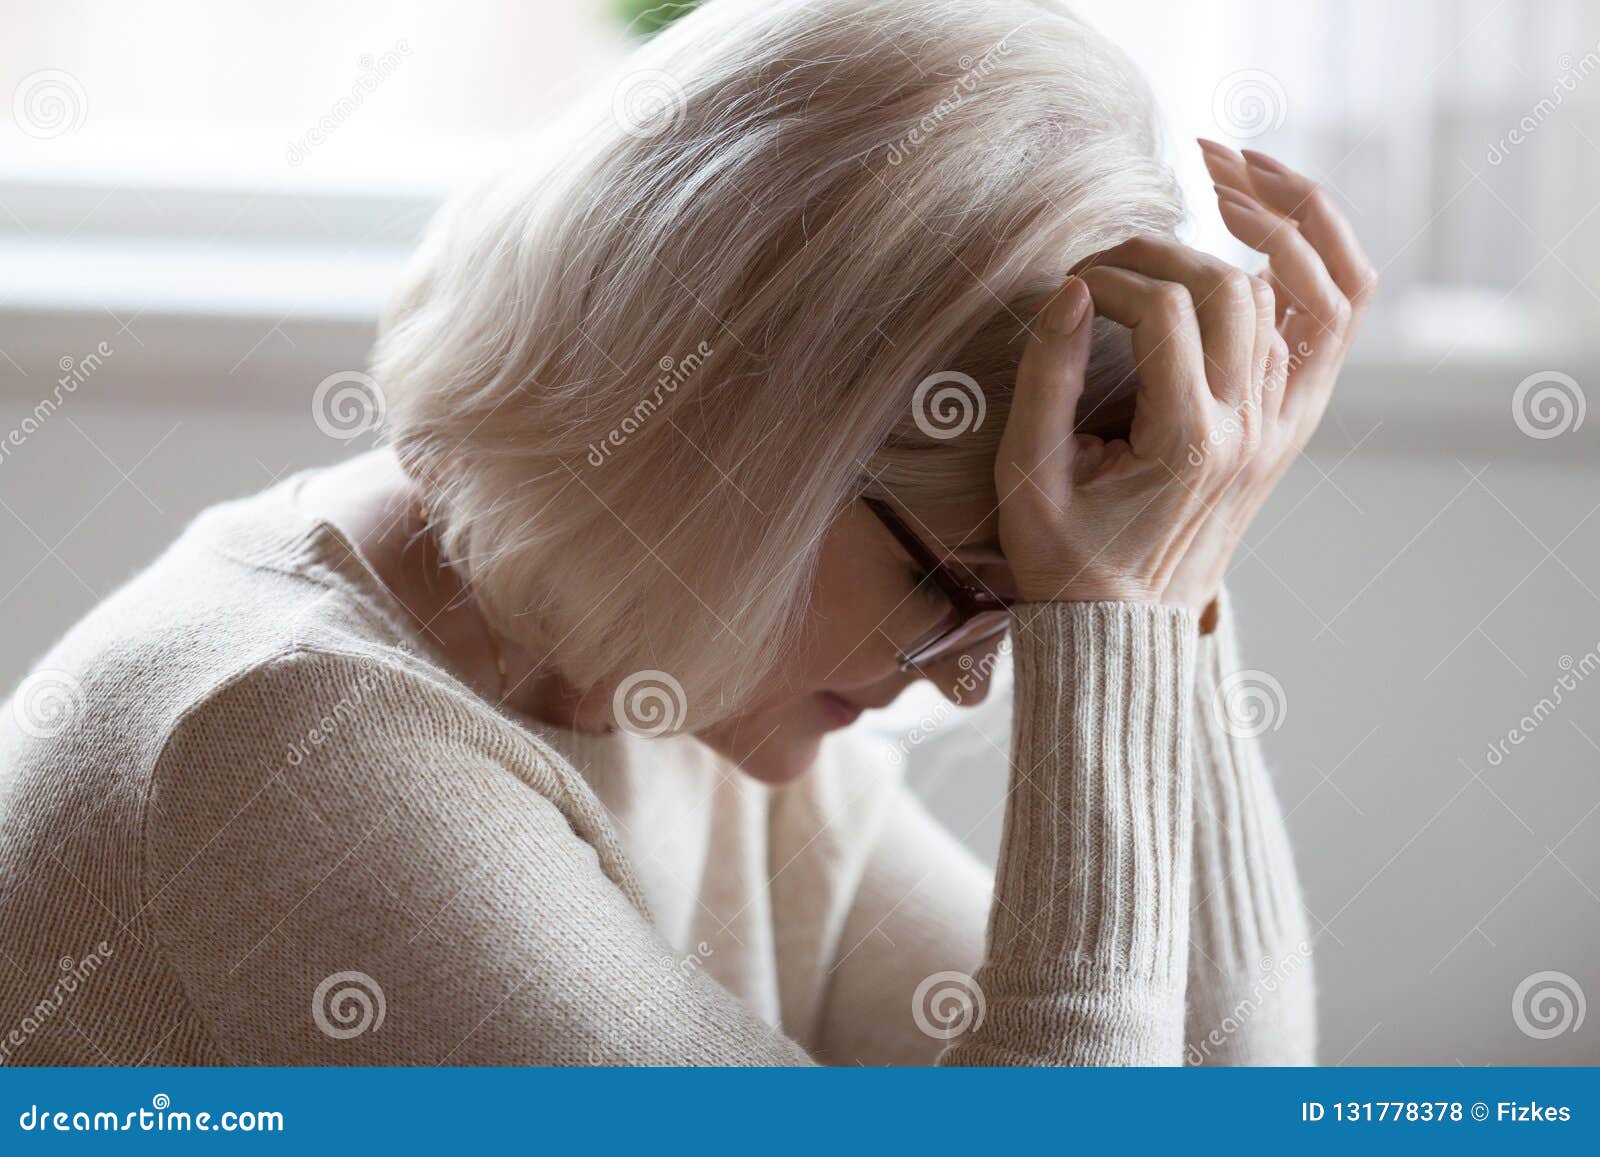 elderly woman feeling unwell suffering from pain or dizziness